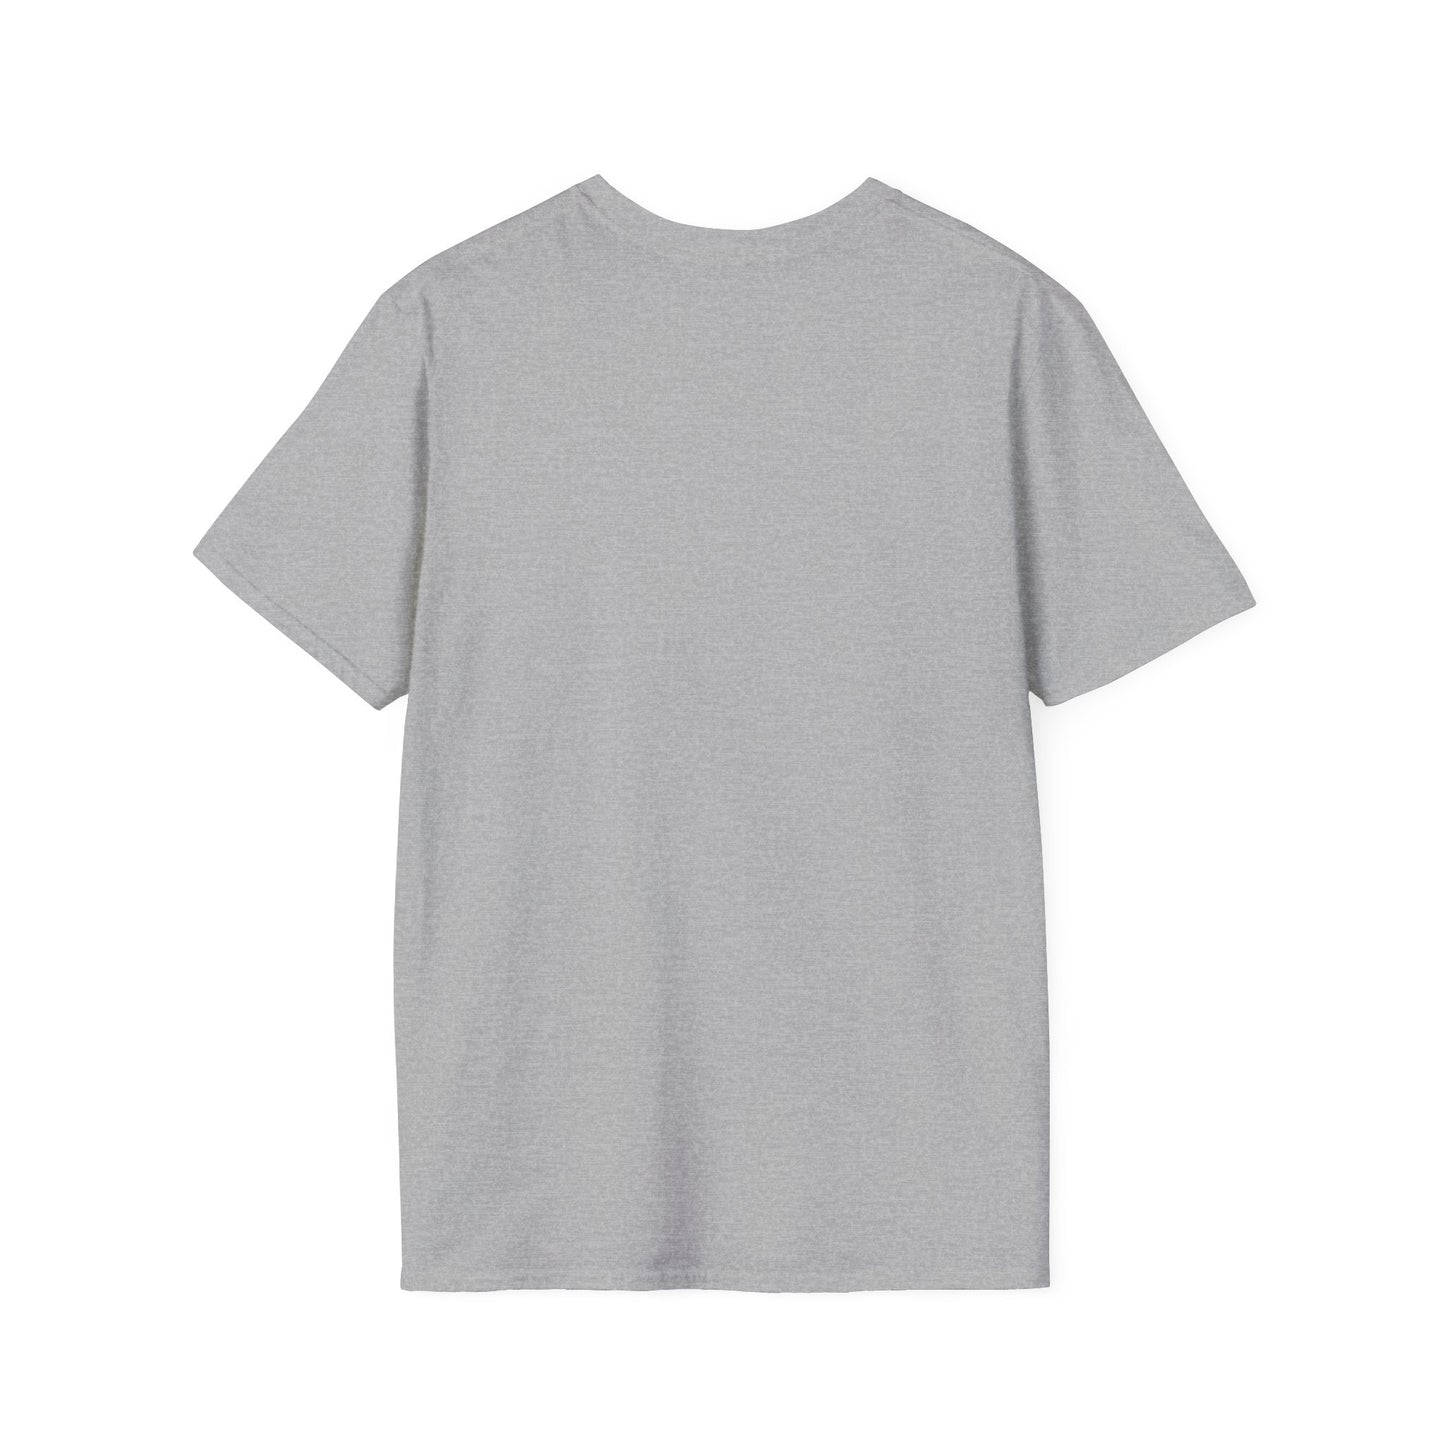 RAM-14 Unisex Softstyle T-Shirt